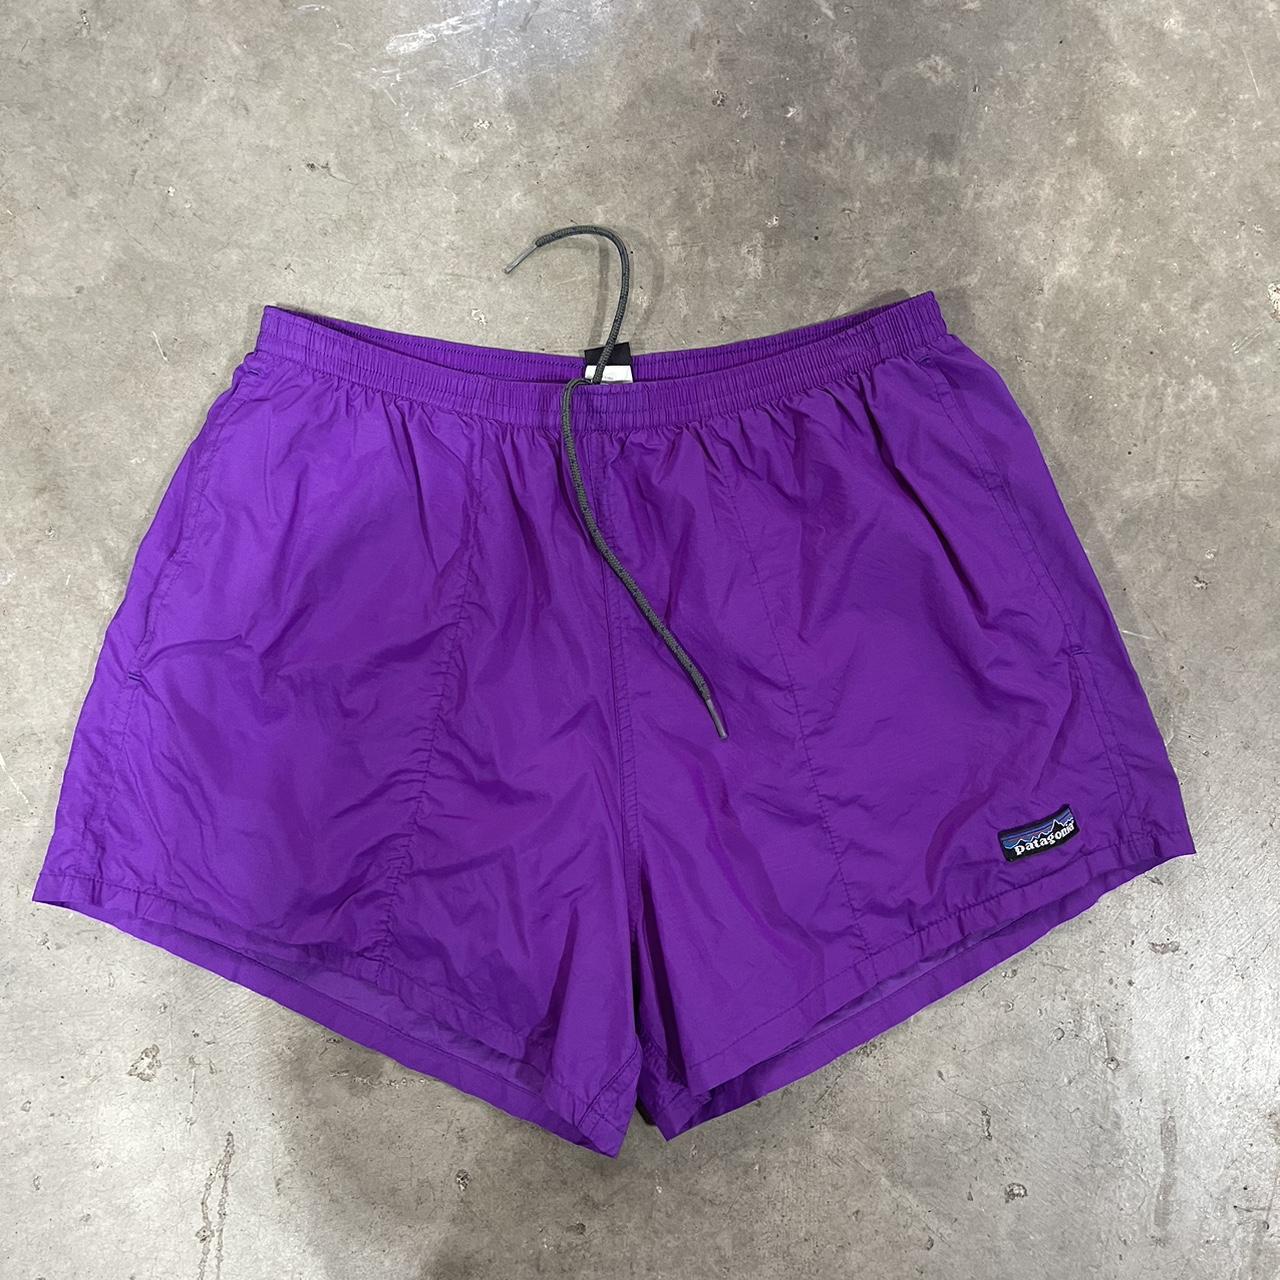 Patagonia Women's Purple Shorts | Depop